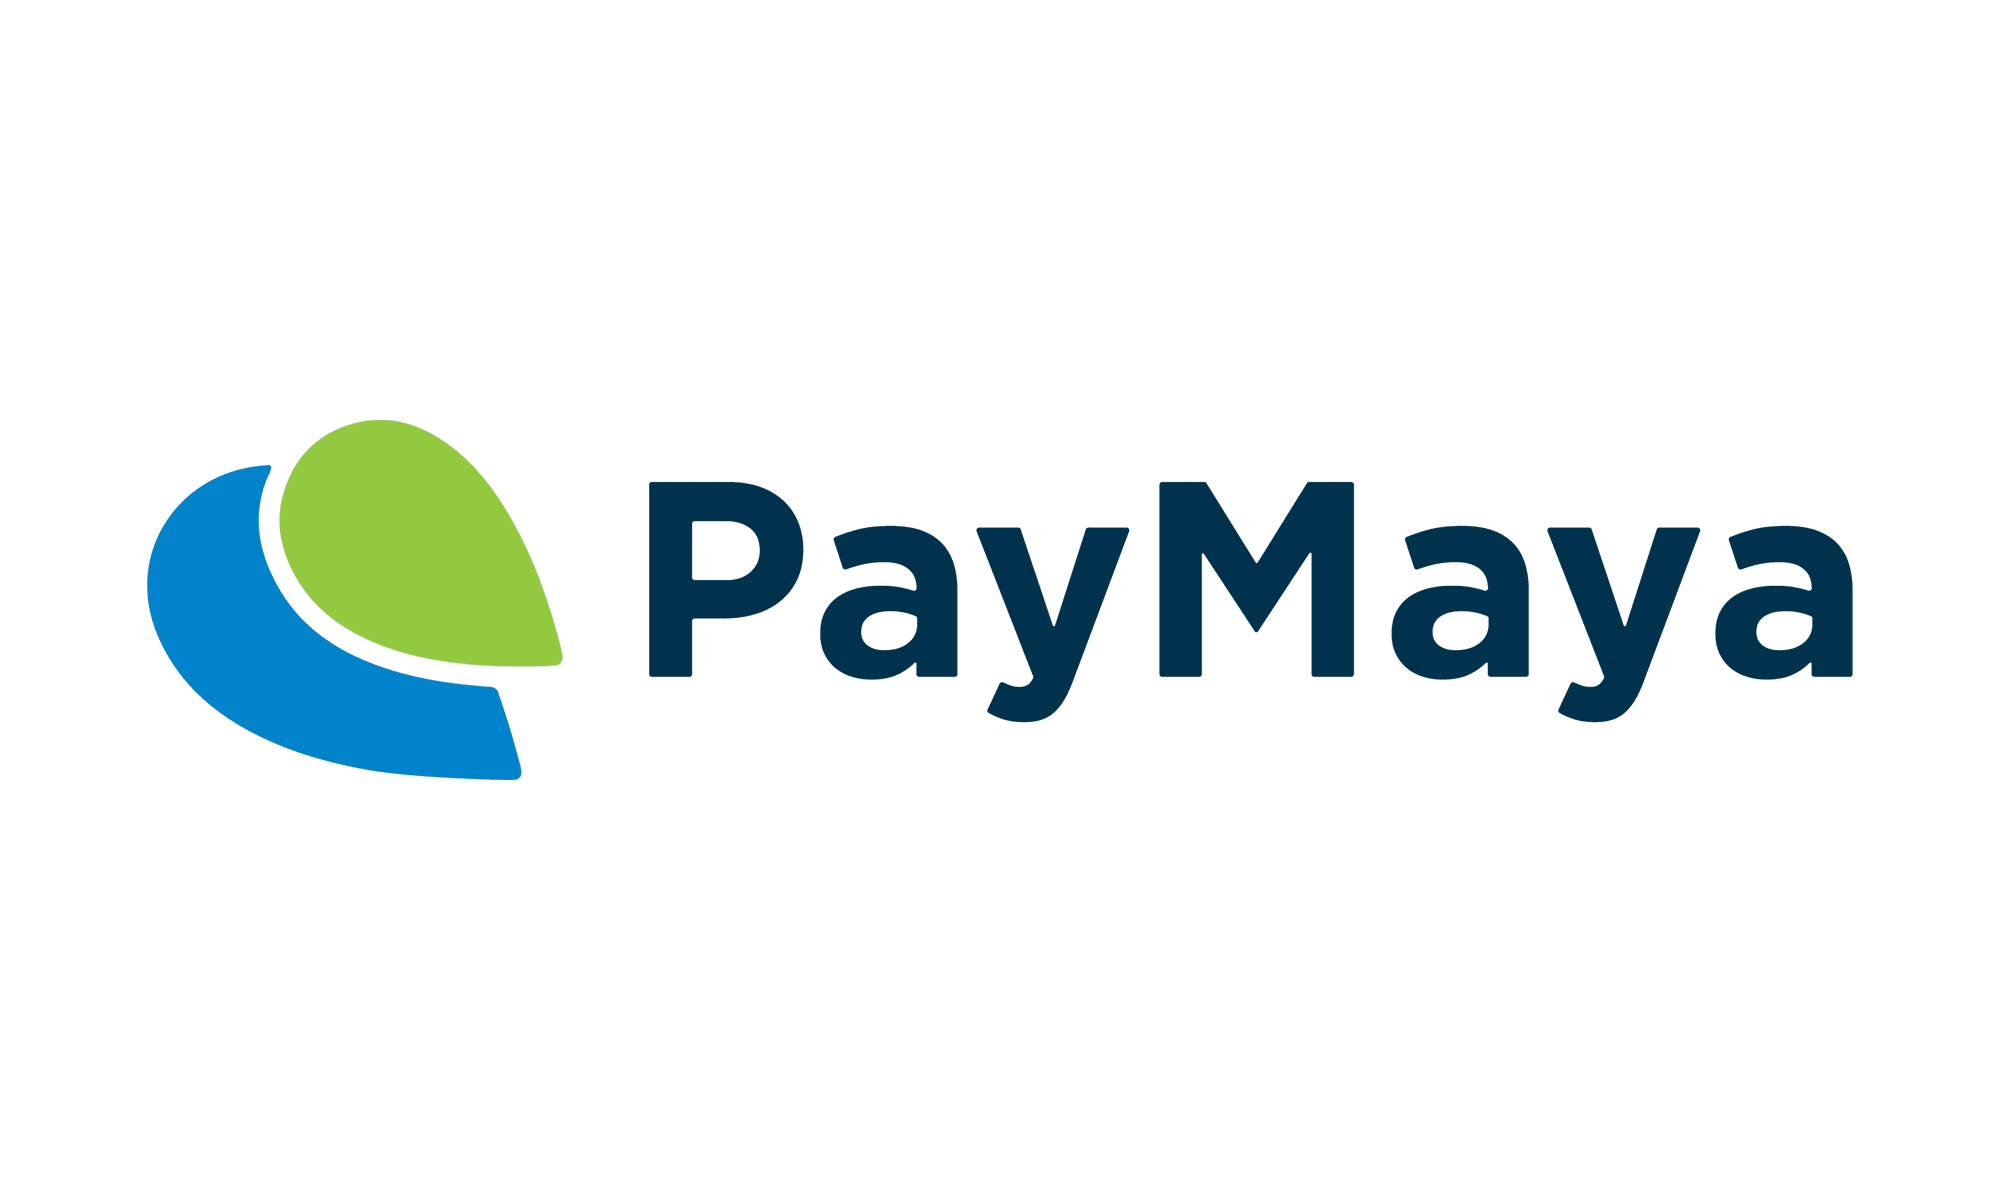 paymaya logo